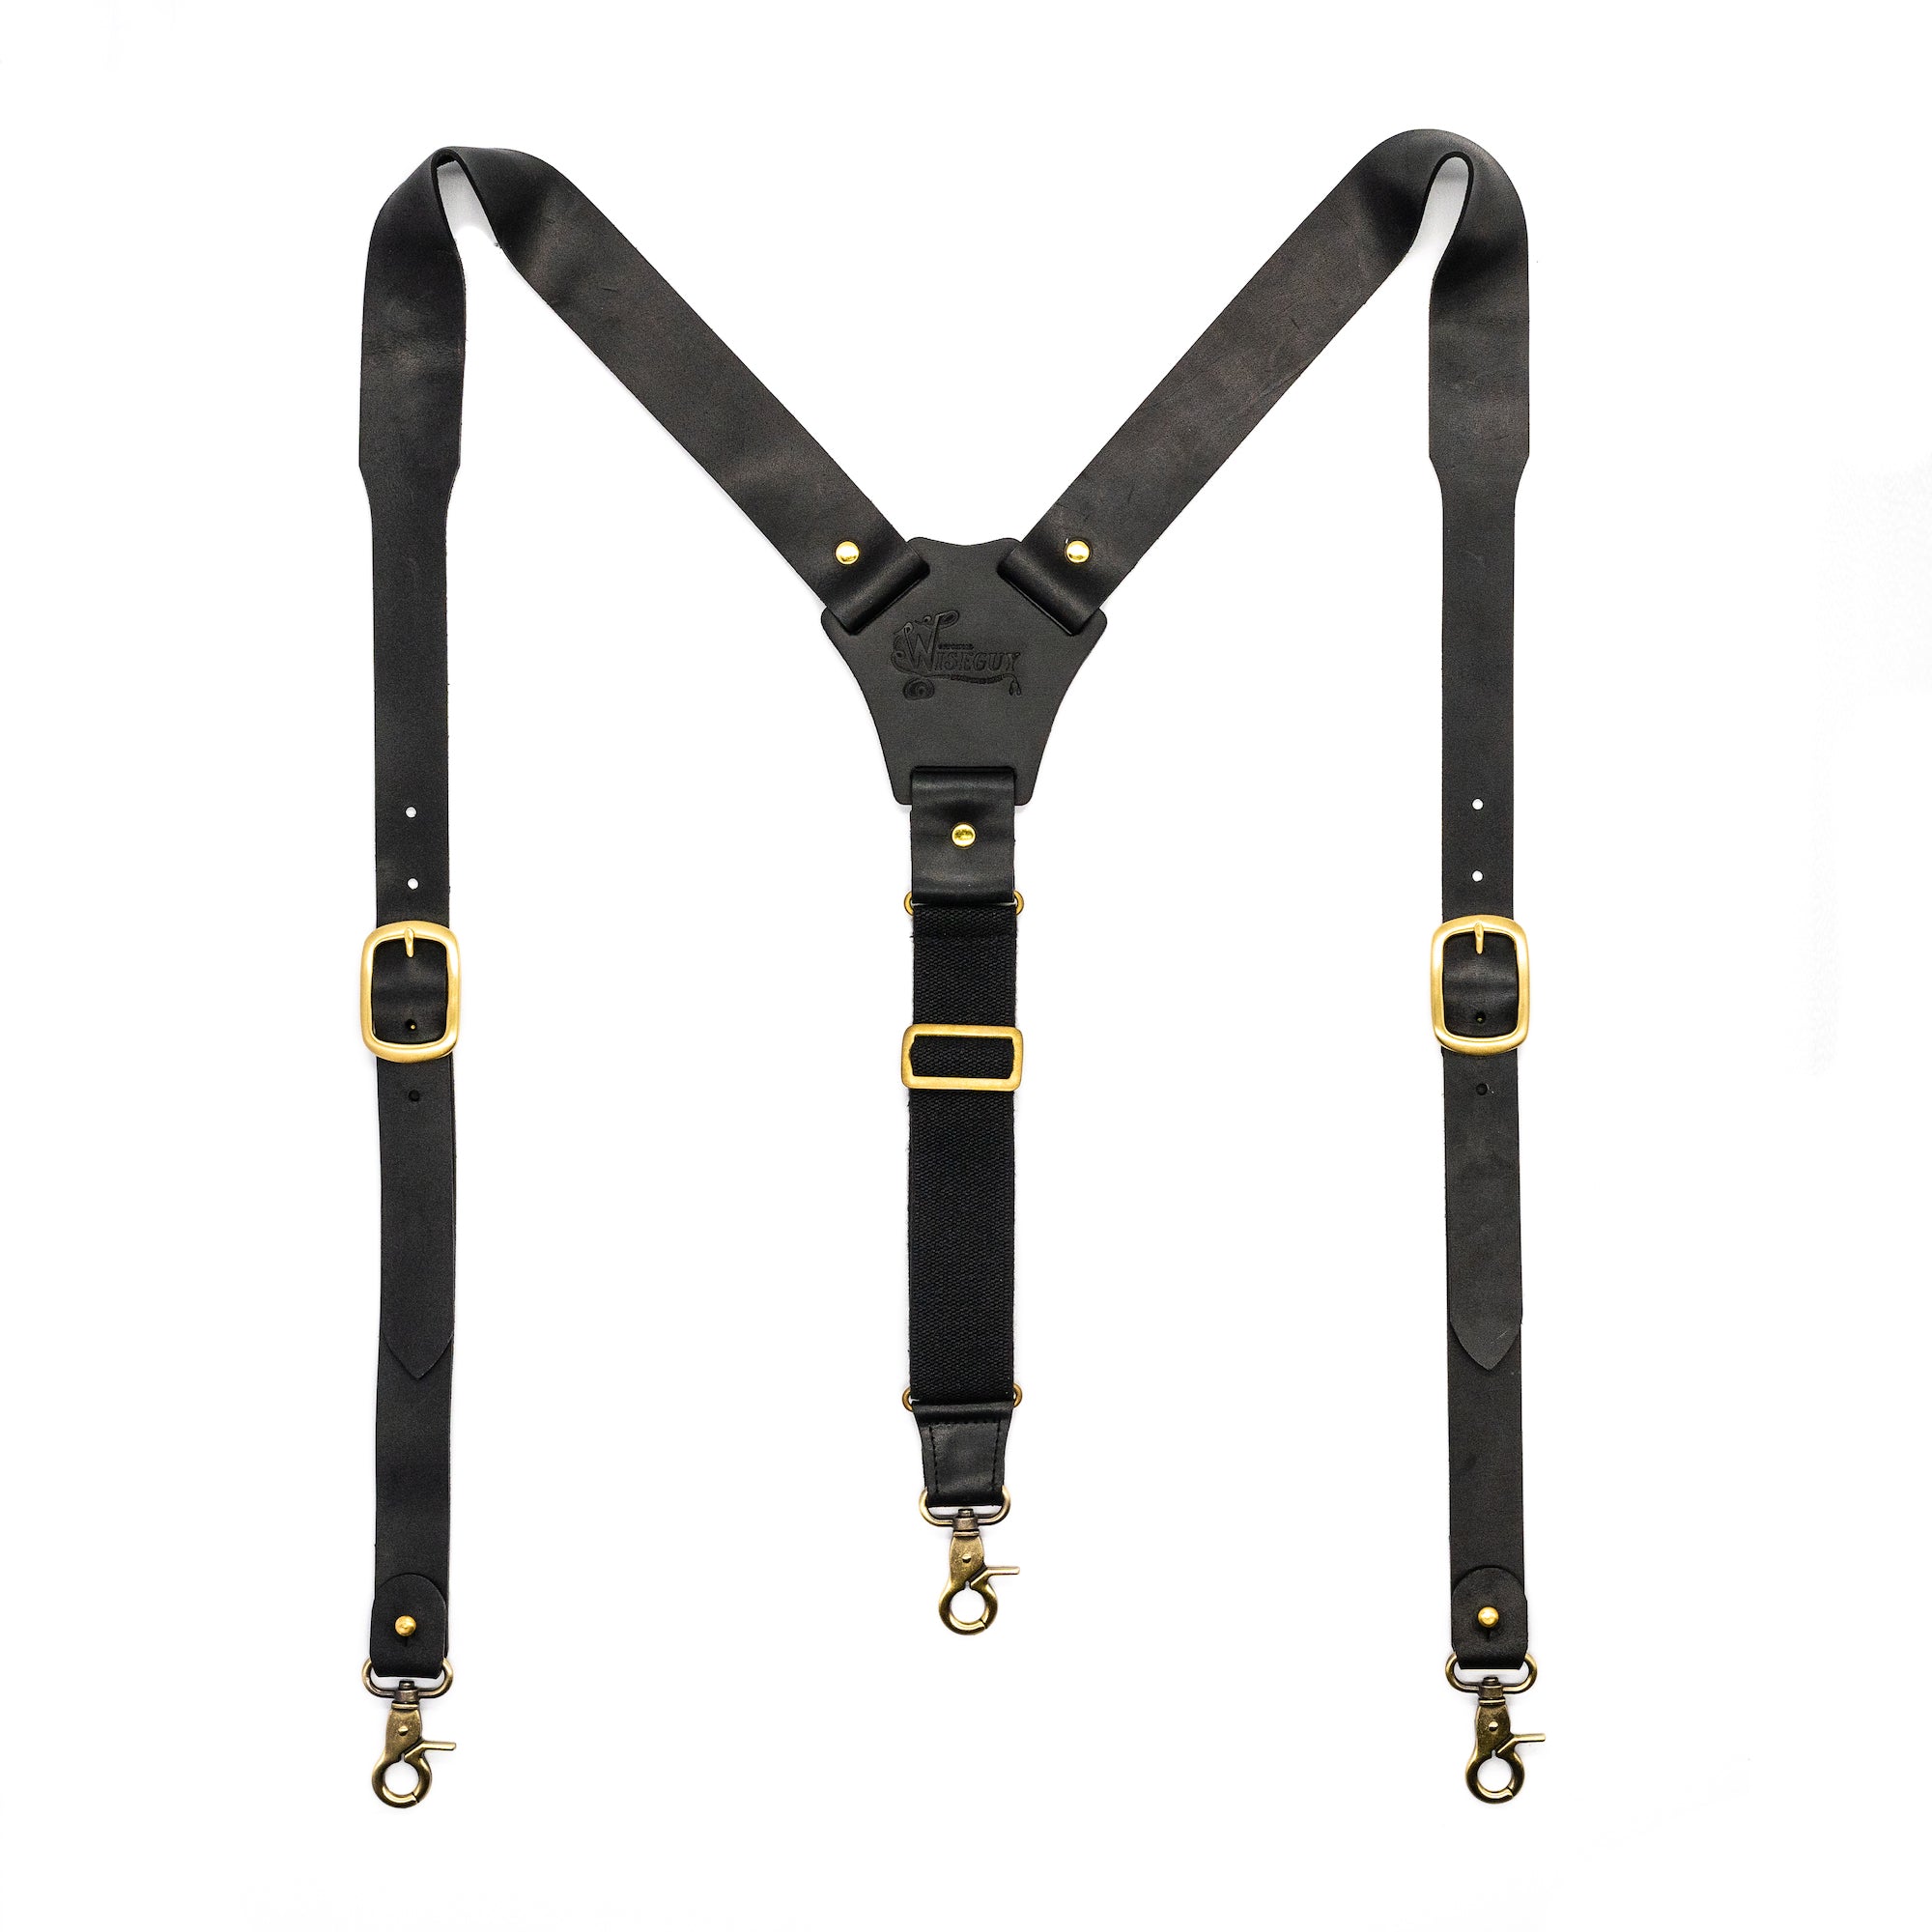 The Hershel Flex Wide Suspenders No. L7011